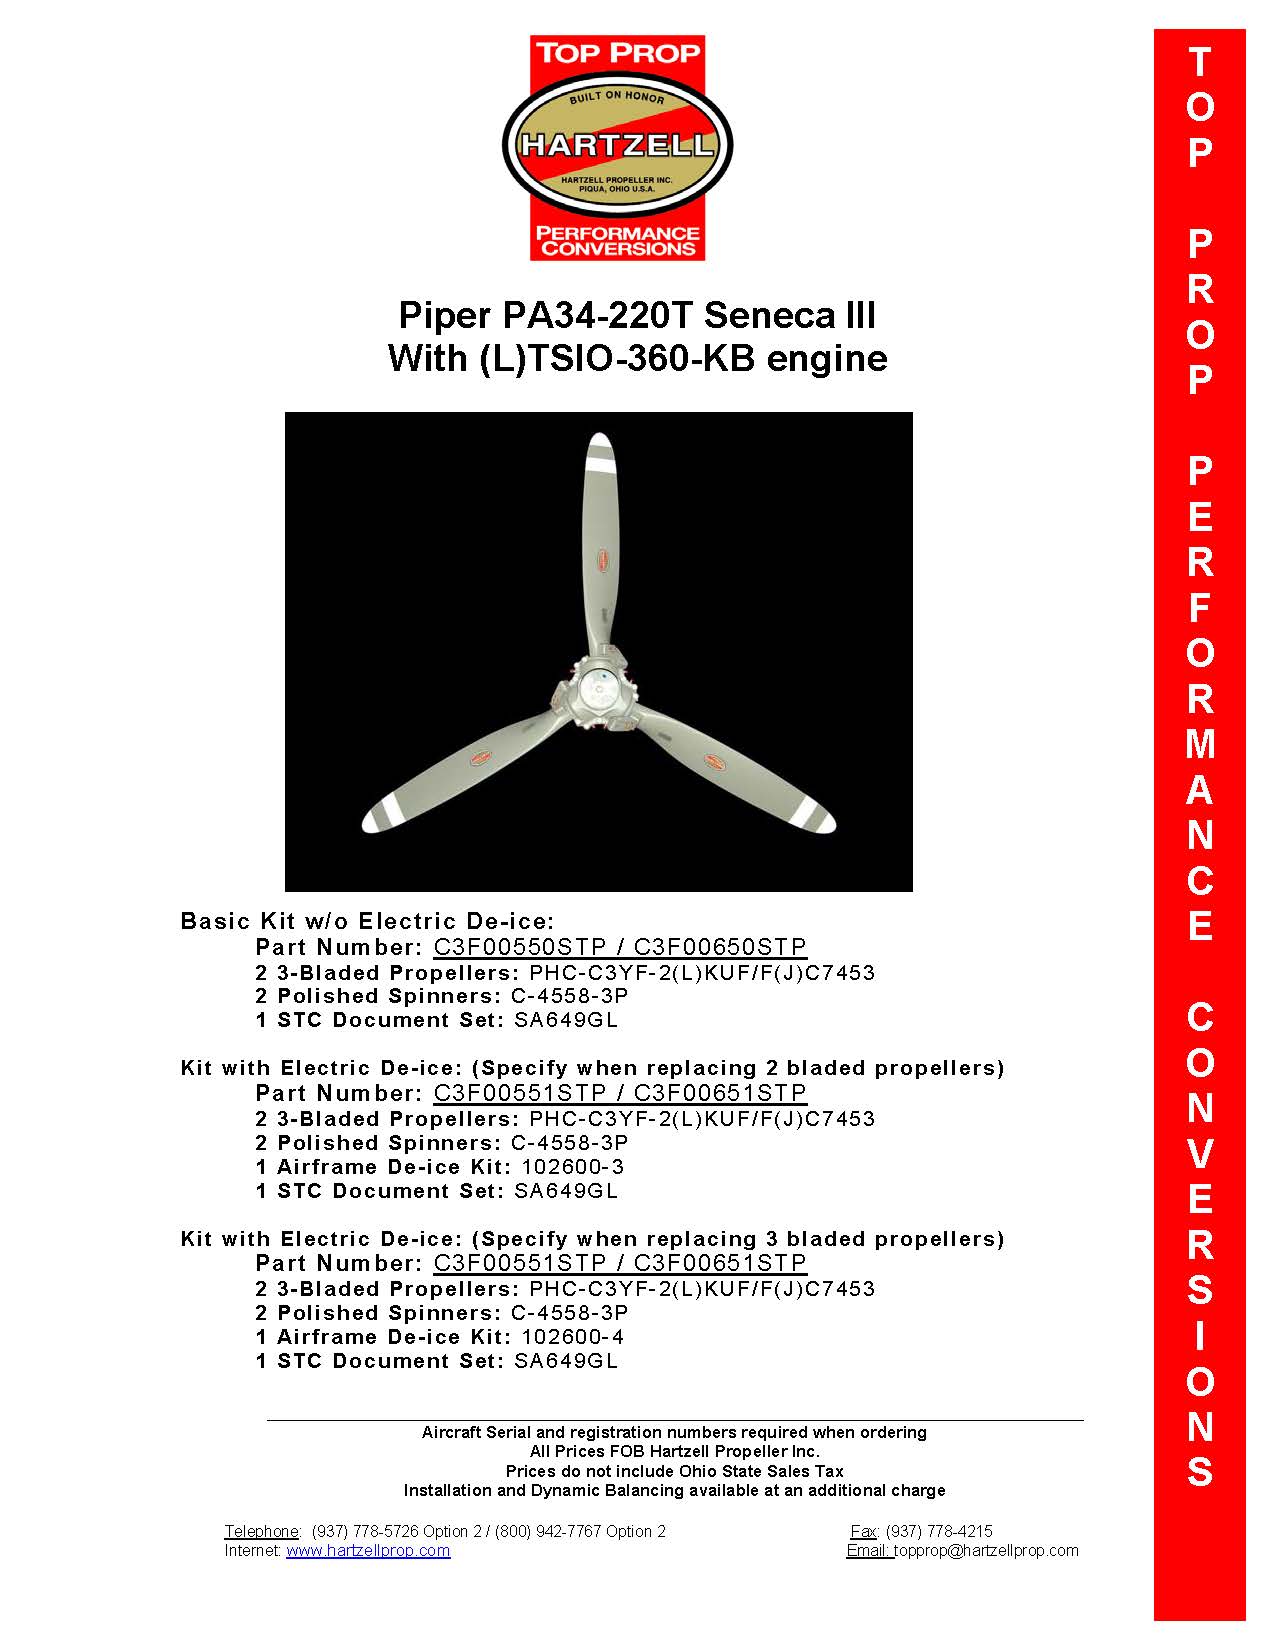 PIPER-SENECA-III-PA34-220T-C3F00550STP/C3F00650STP-PAGE-1